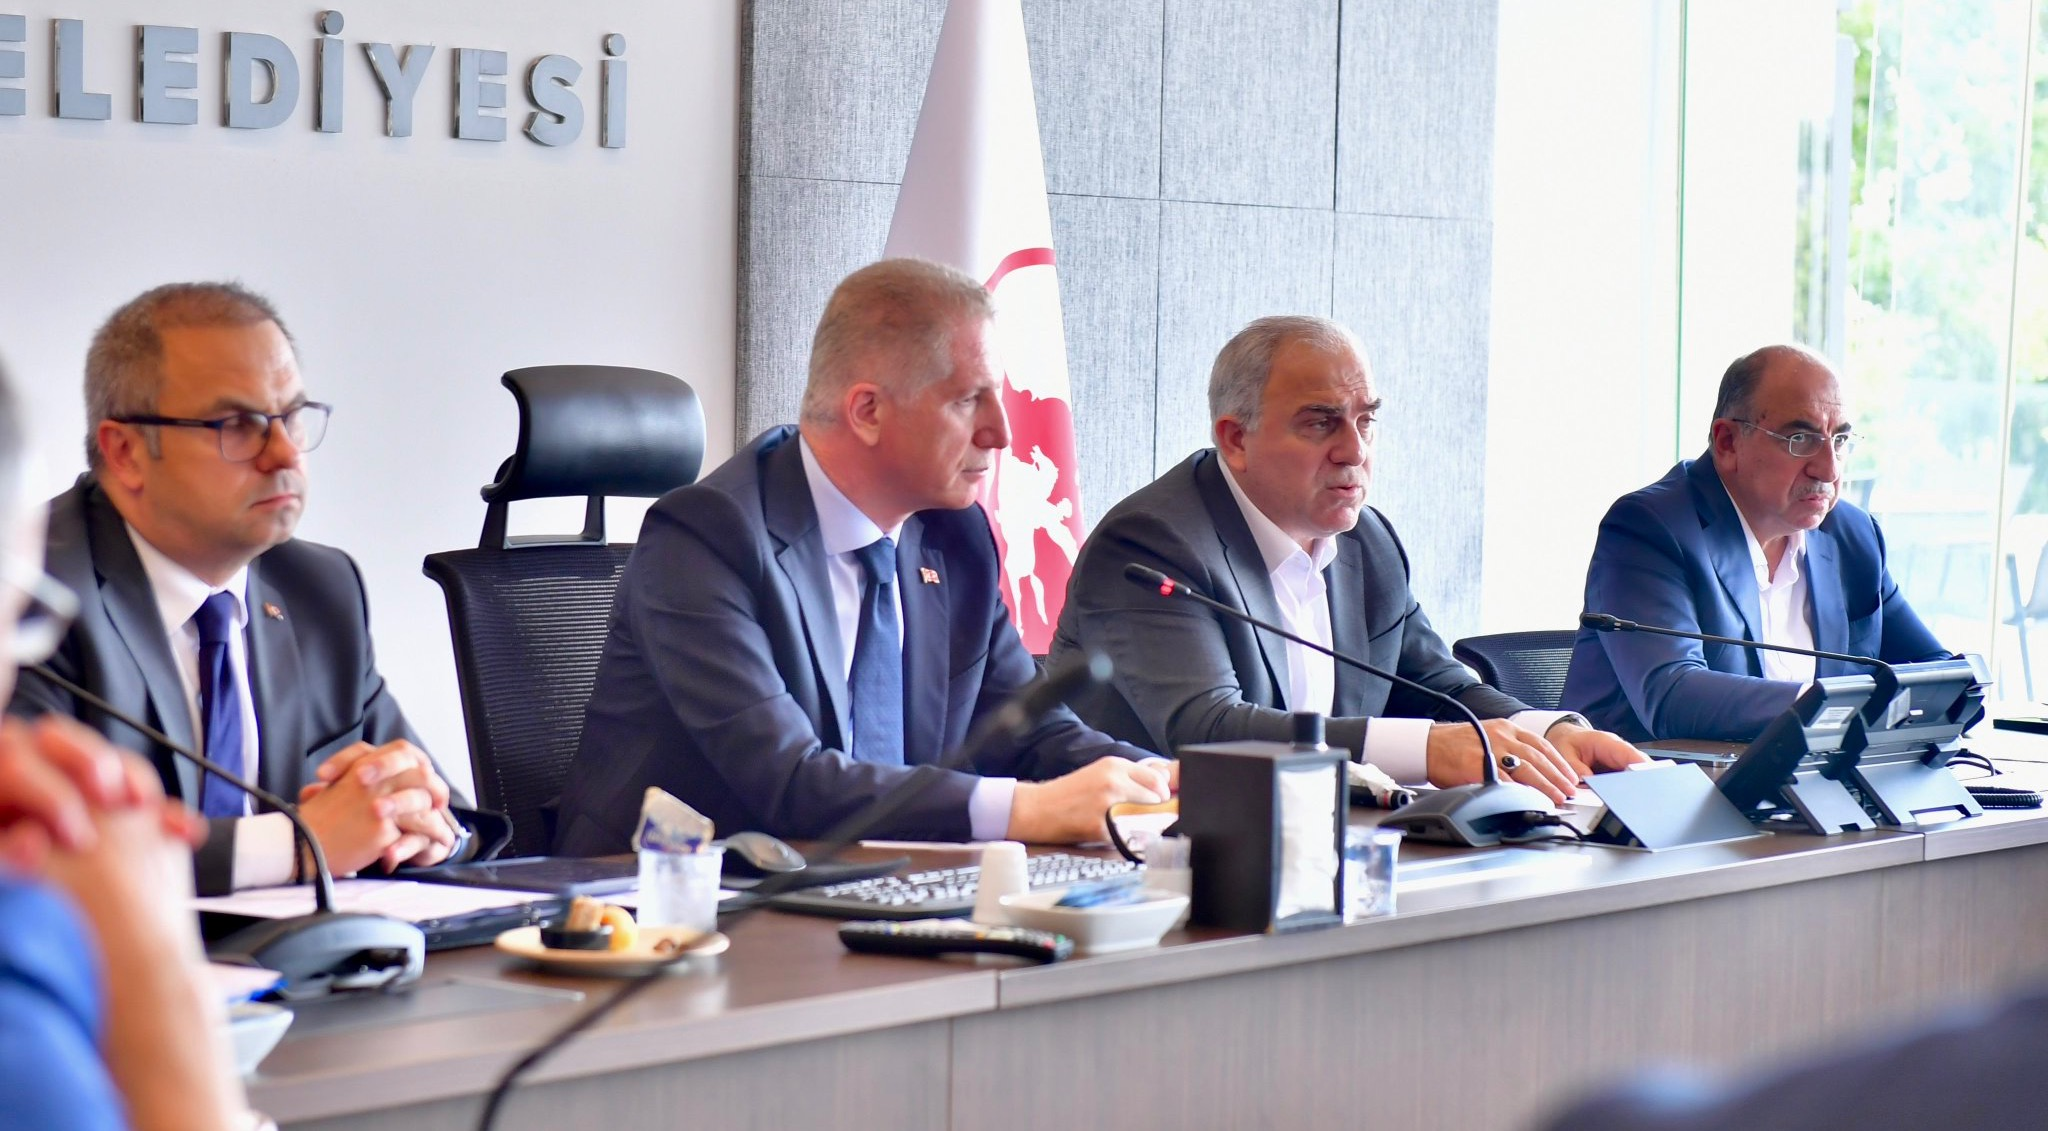 Fatih Belediyesi Çalışmalarını Değerlendirme Toplantısı, İstanbul Valisi Davut Gül ve Başkan Turan ın Katılımıyla Gerçekleştirildi